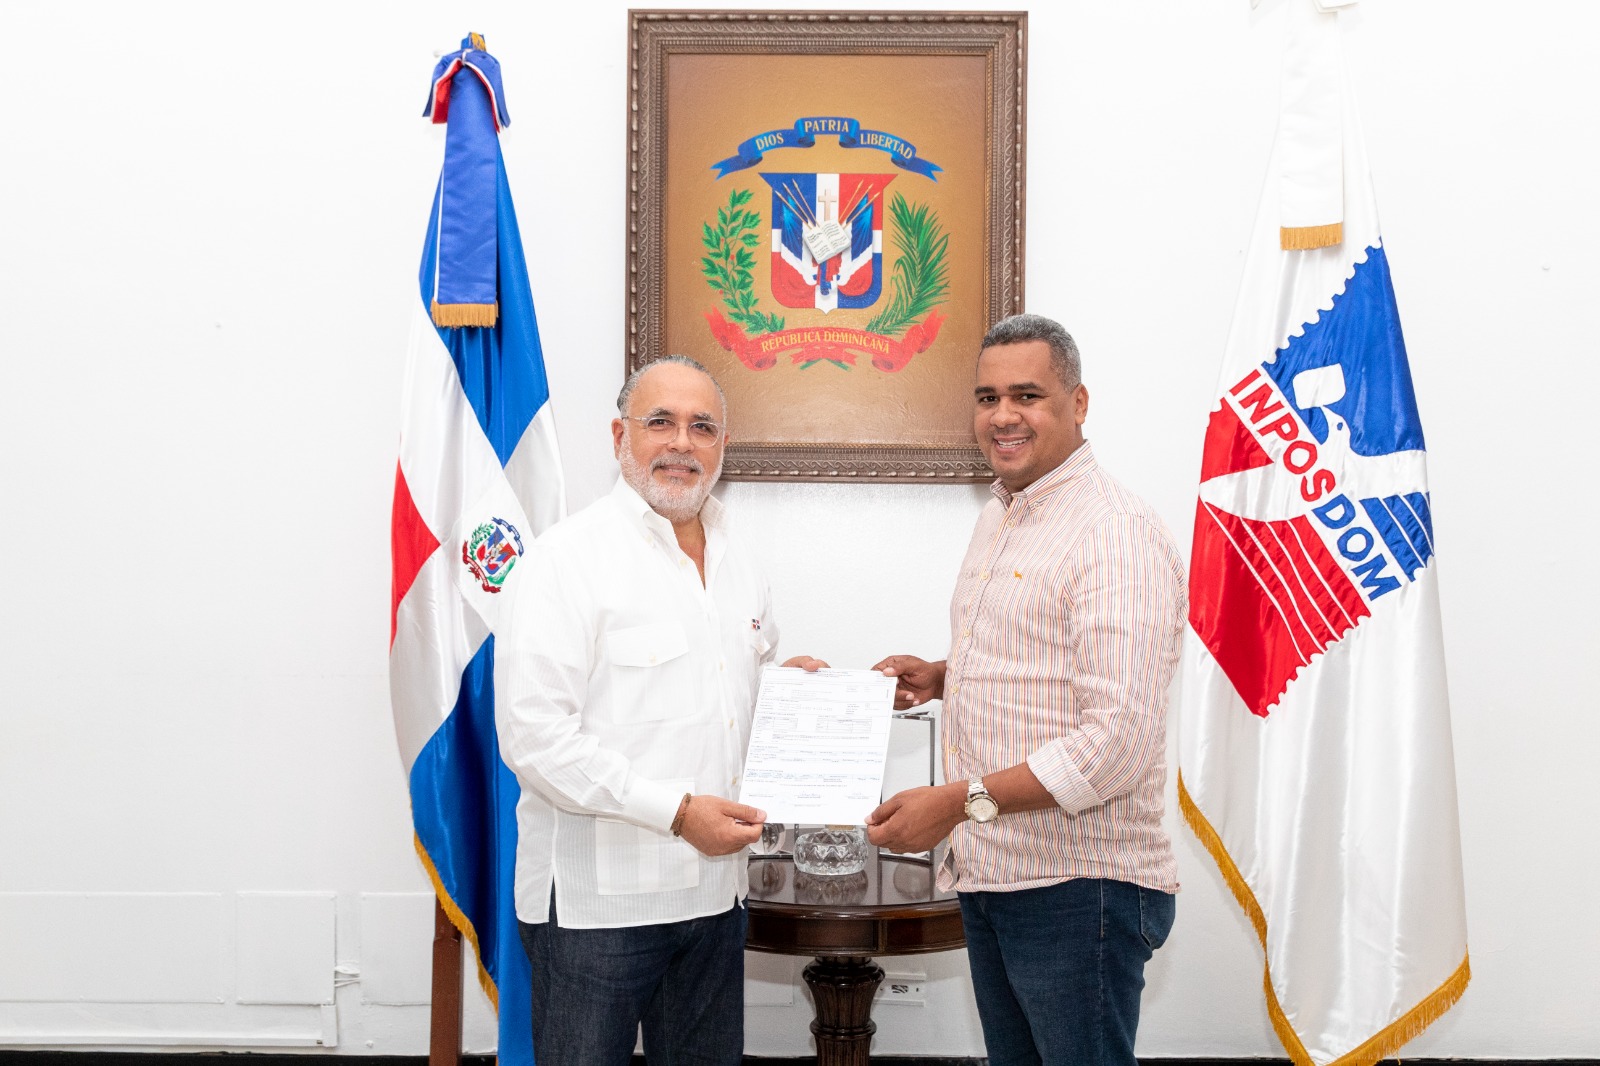 Gobierno Dominicano salda deuda histórica del INPOSDOM sostenía con la Unión Postal Universal